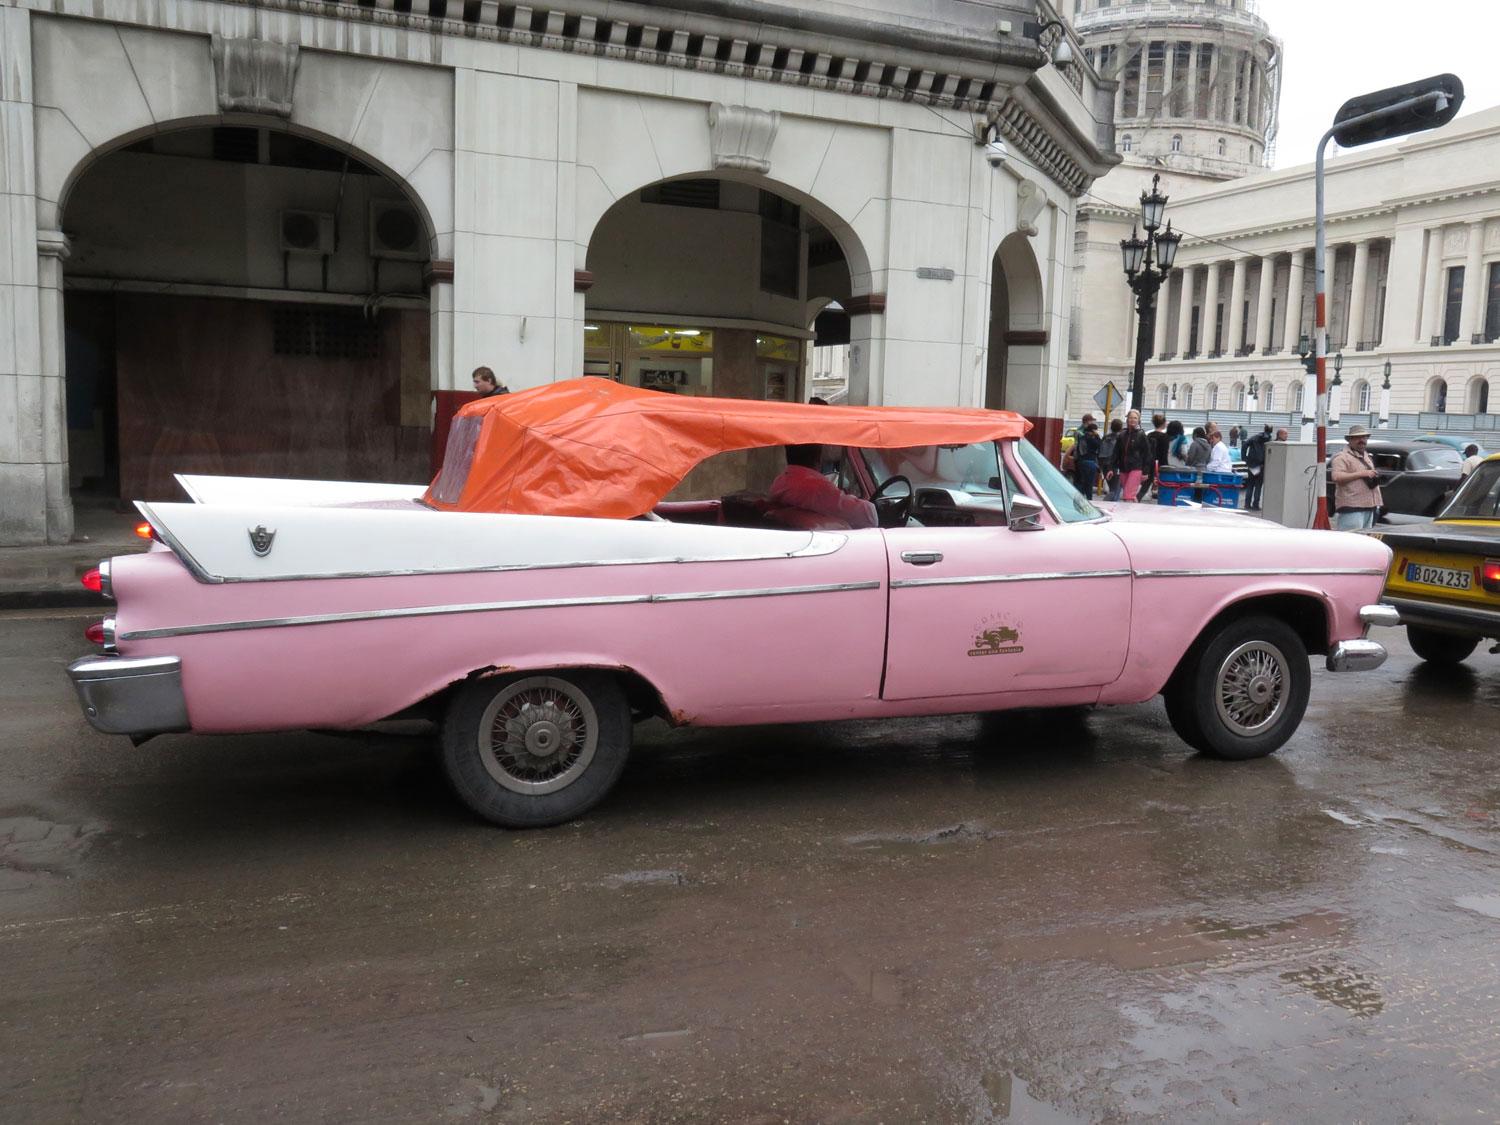 Det regnar inte så ofta i Havanna så sufletterna ser ut som något katten släpat in, även på denna Dodge Convertible från 1955 eller -56. Regeringsbyggnaden Capitolium i bakgrunden.